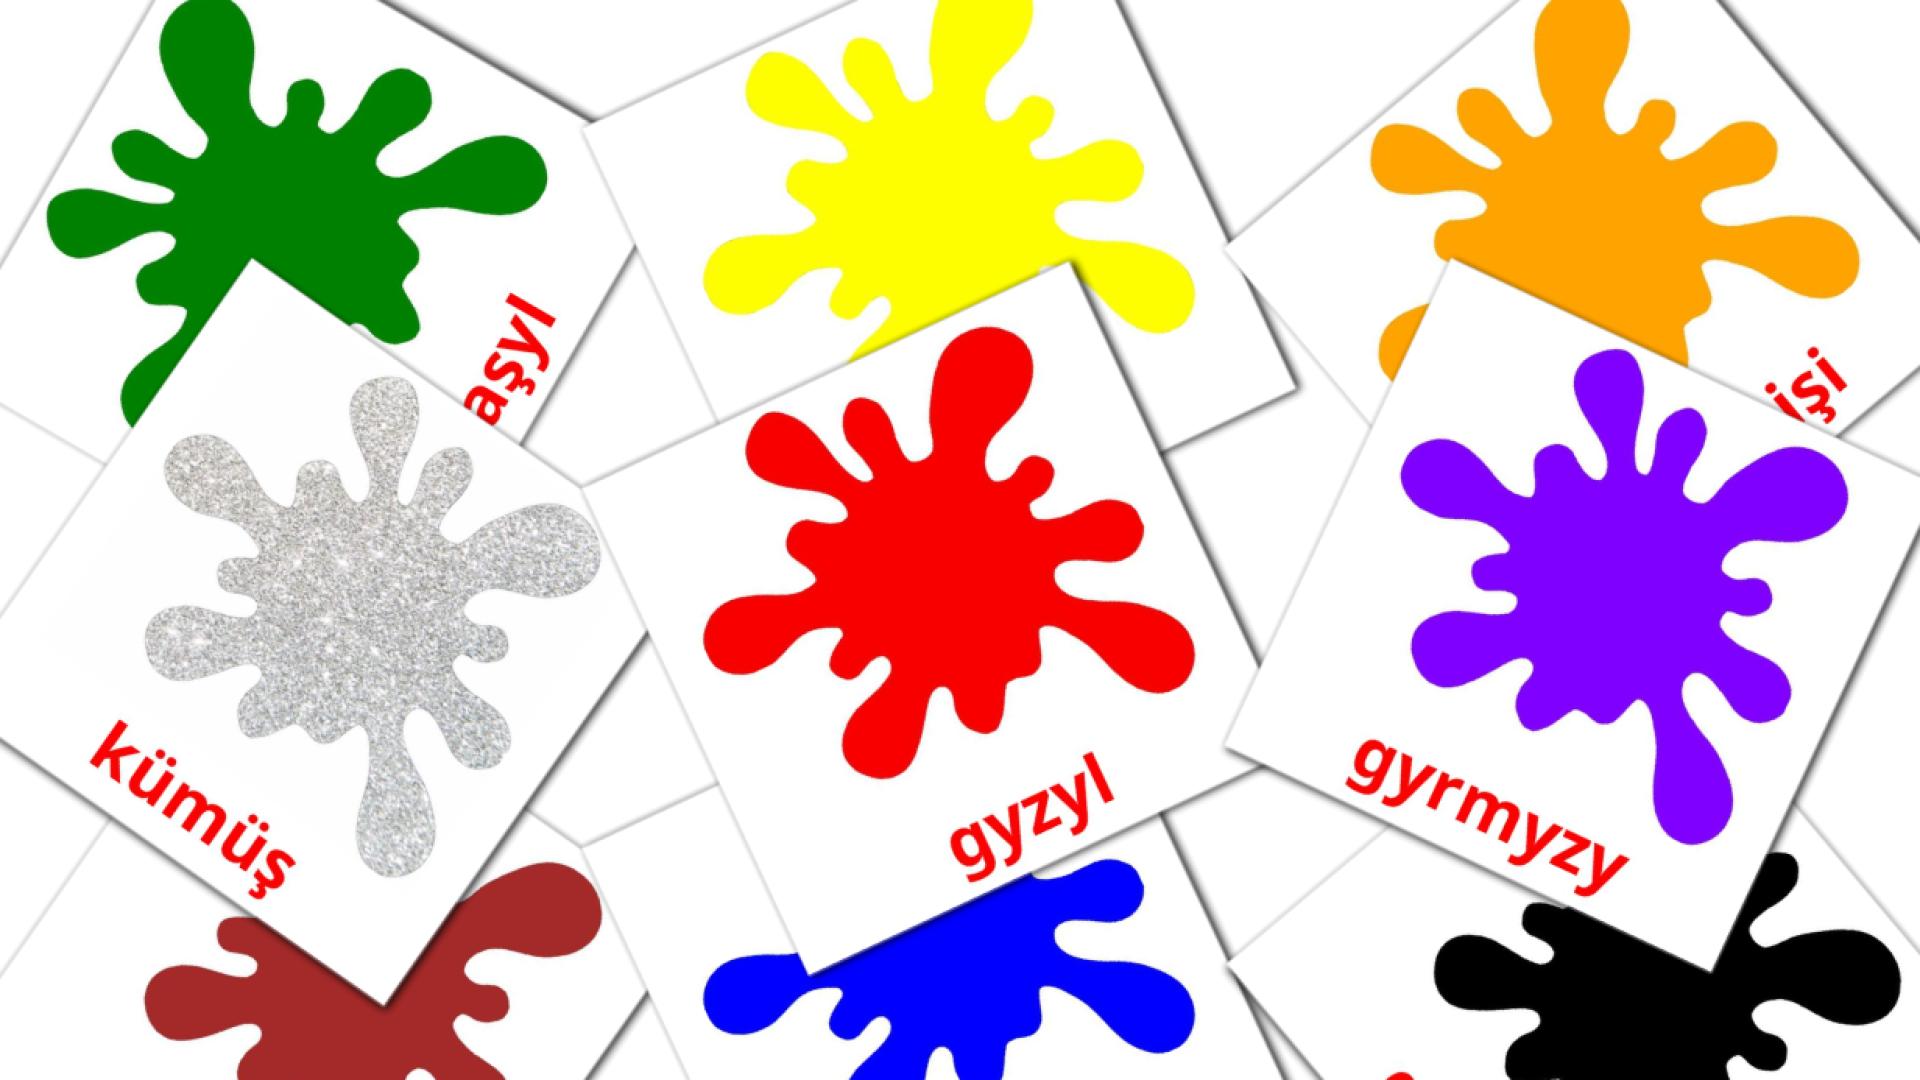 Reňkler we şekiller turkmen vocabulary flashcards